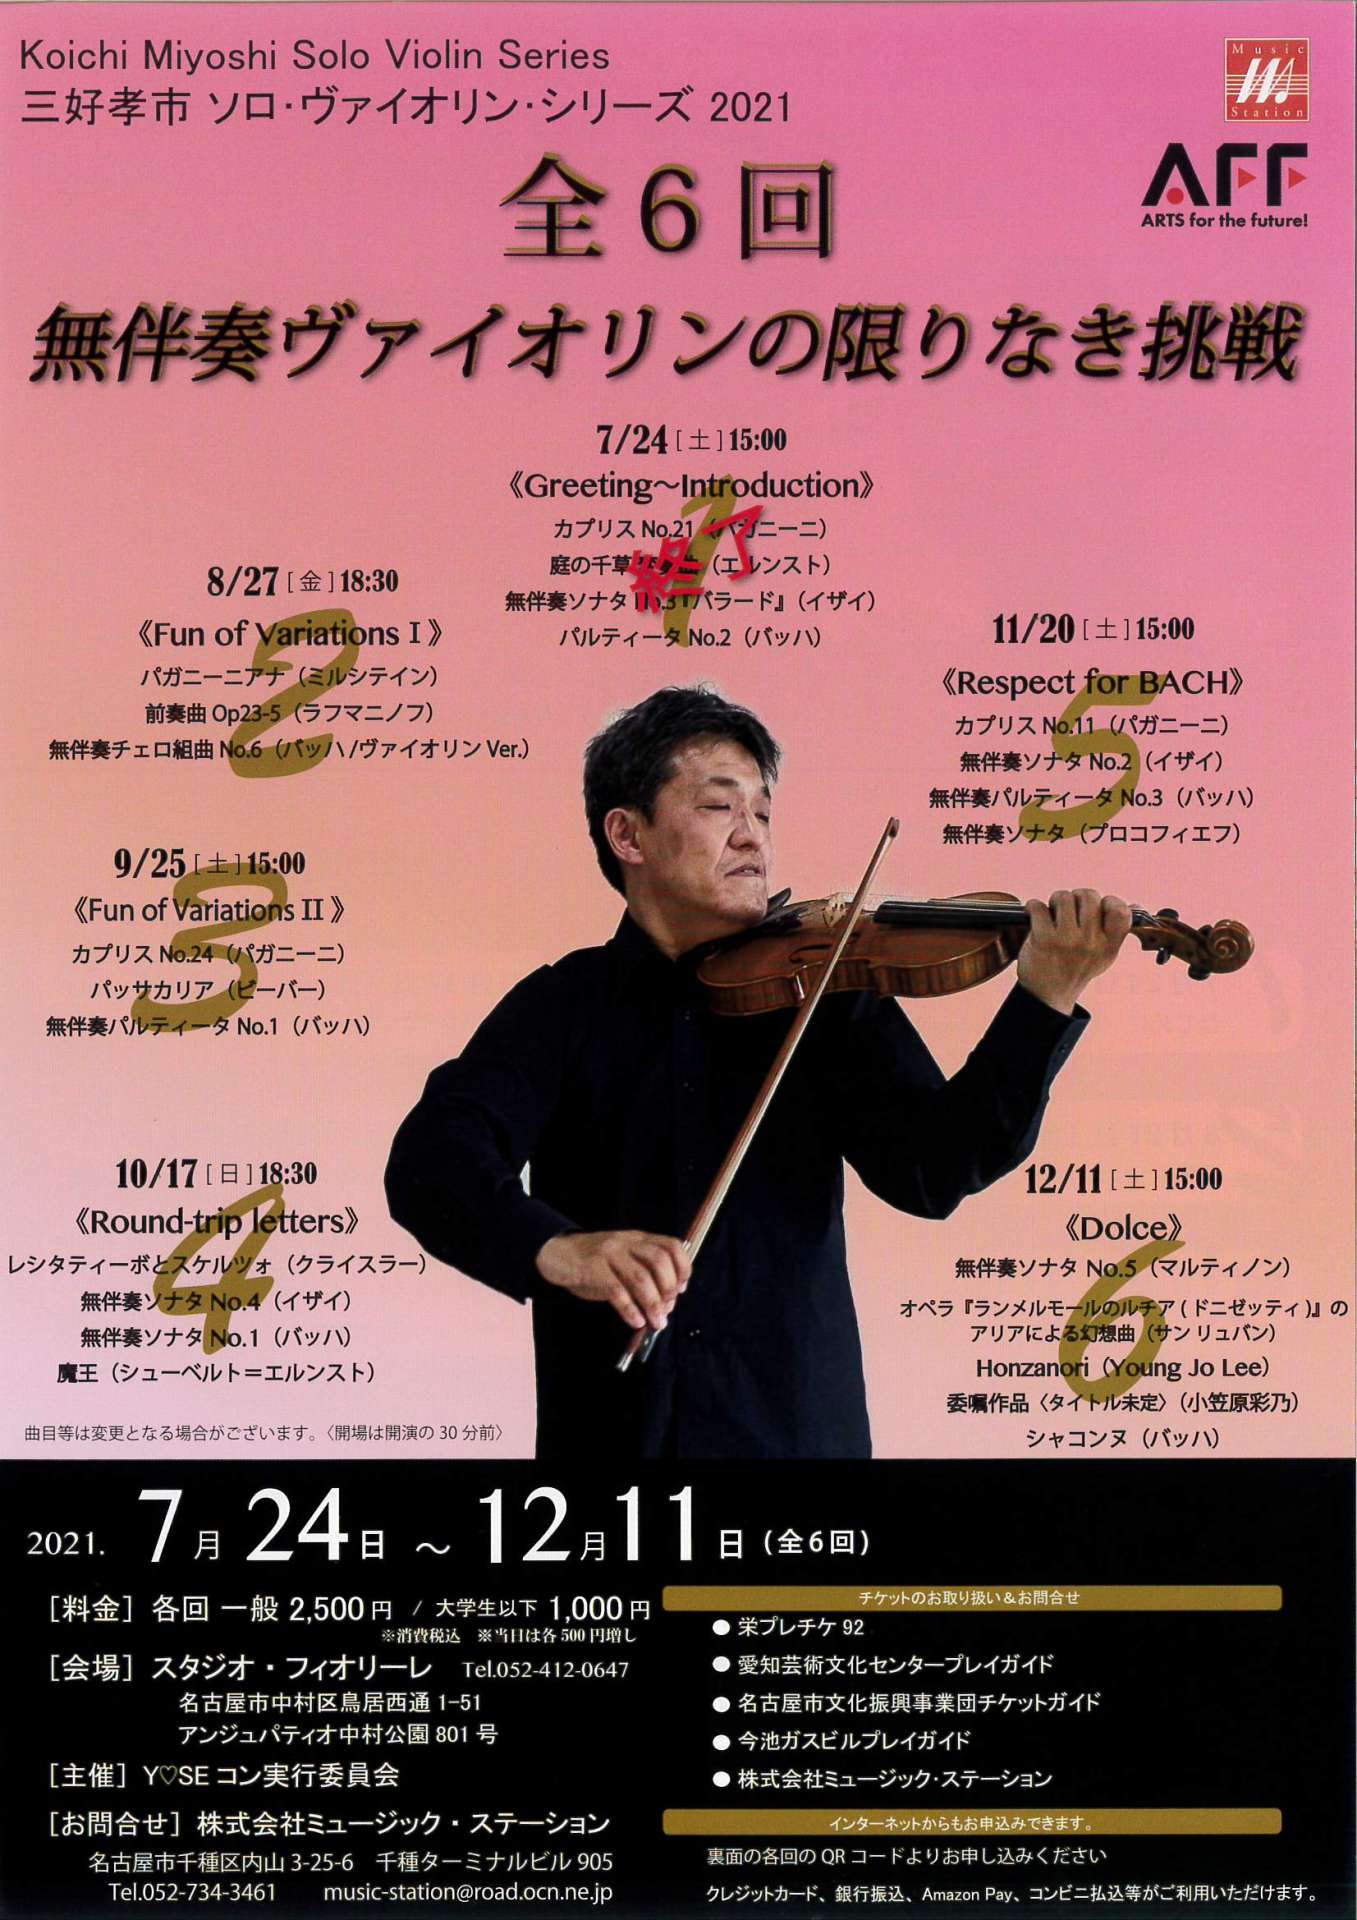 続・気になるコンサート”三好孝市さん ソロ・ヴァイオリン・シリーズ2021”